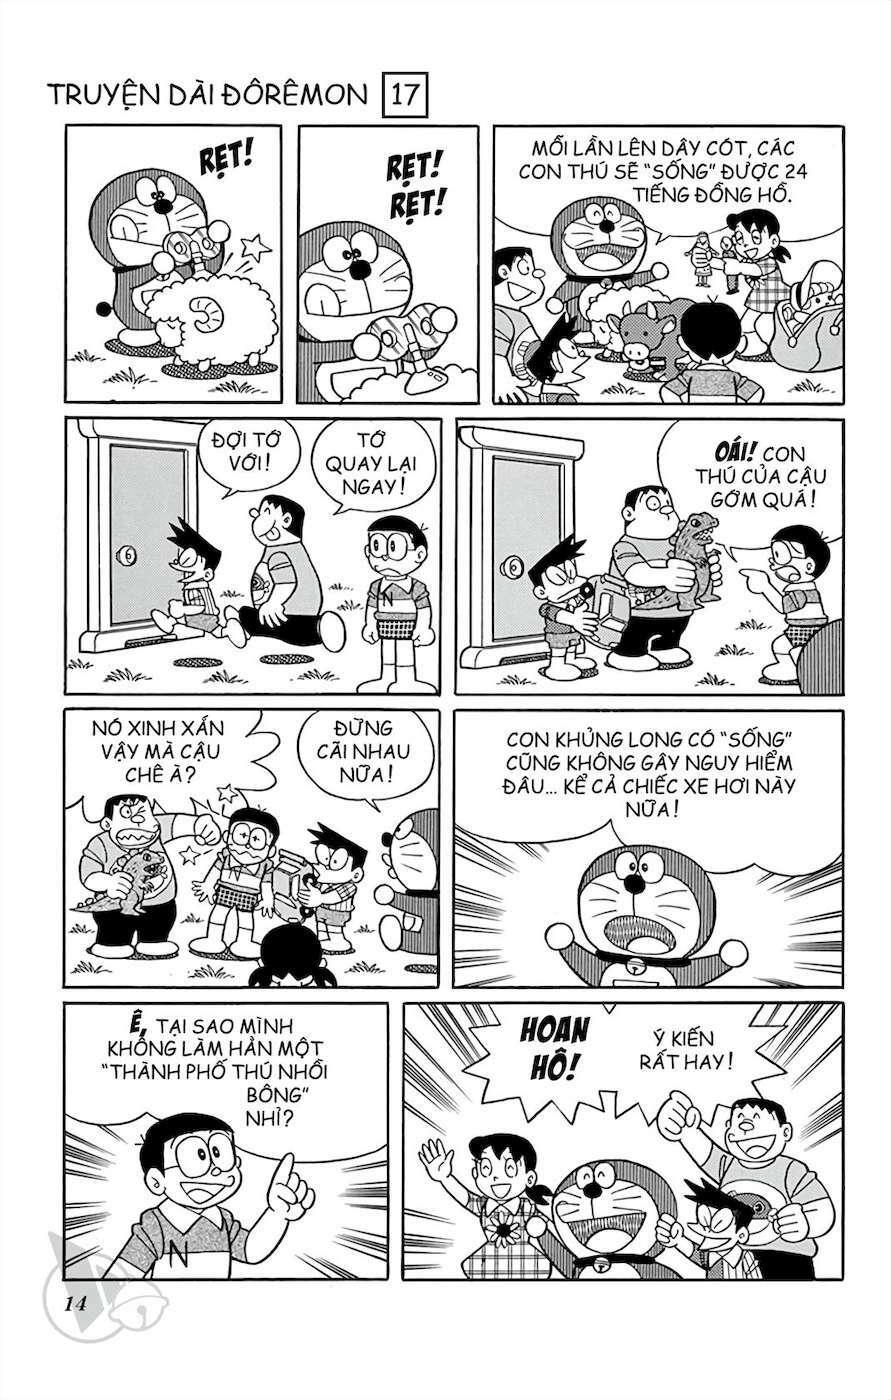 Truyện Tranh Doraemon: Thành Phố Thú Nhồi Bông trang 13